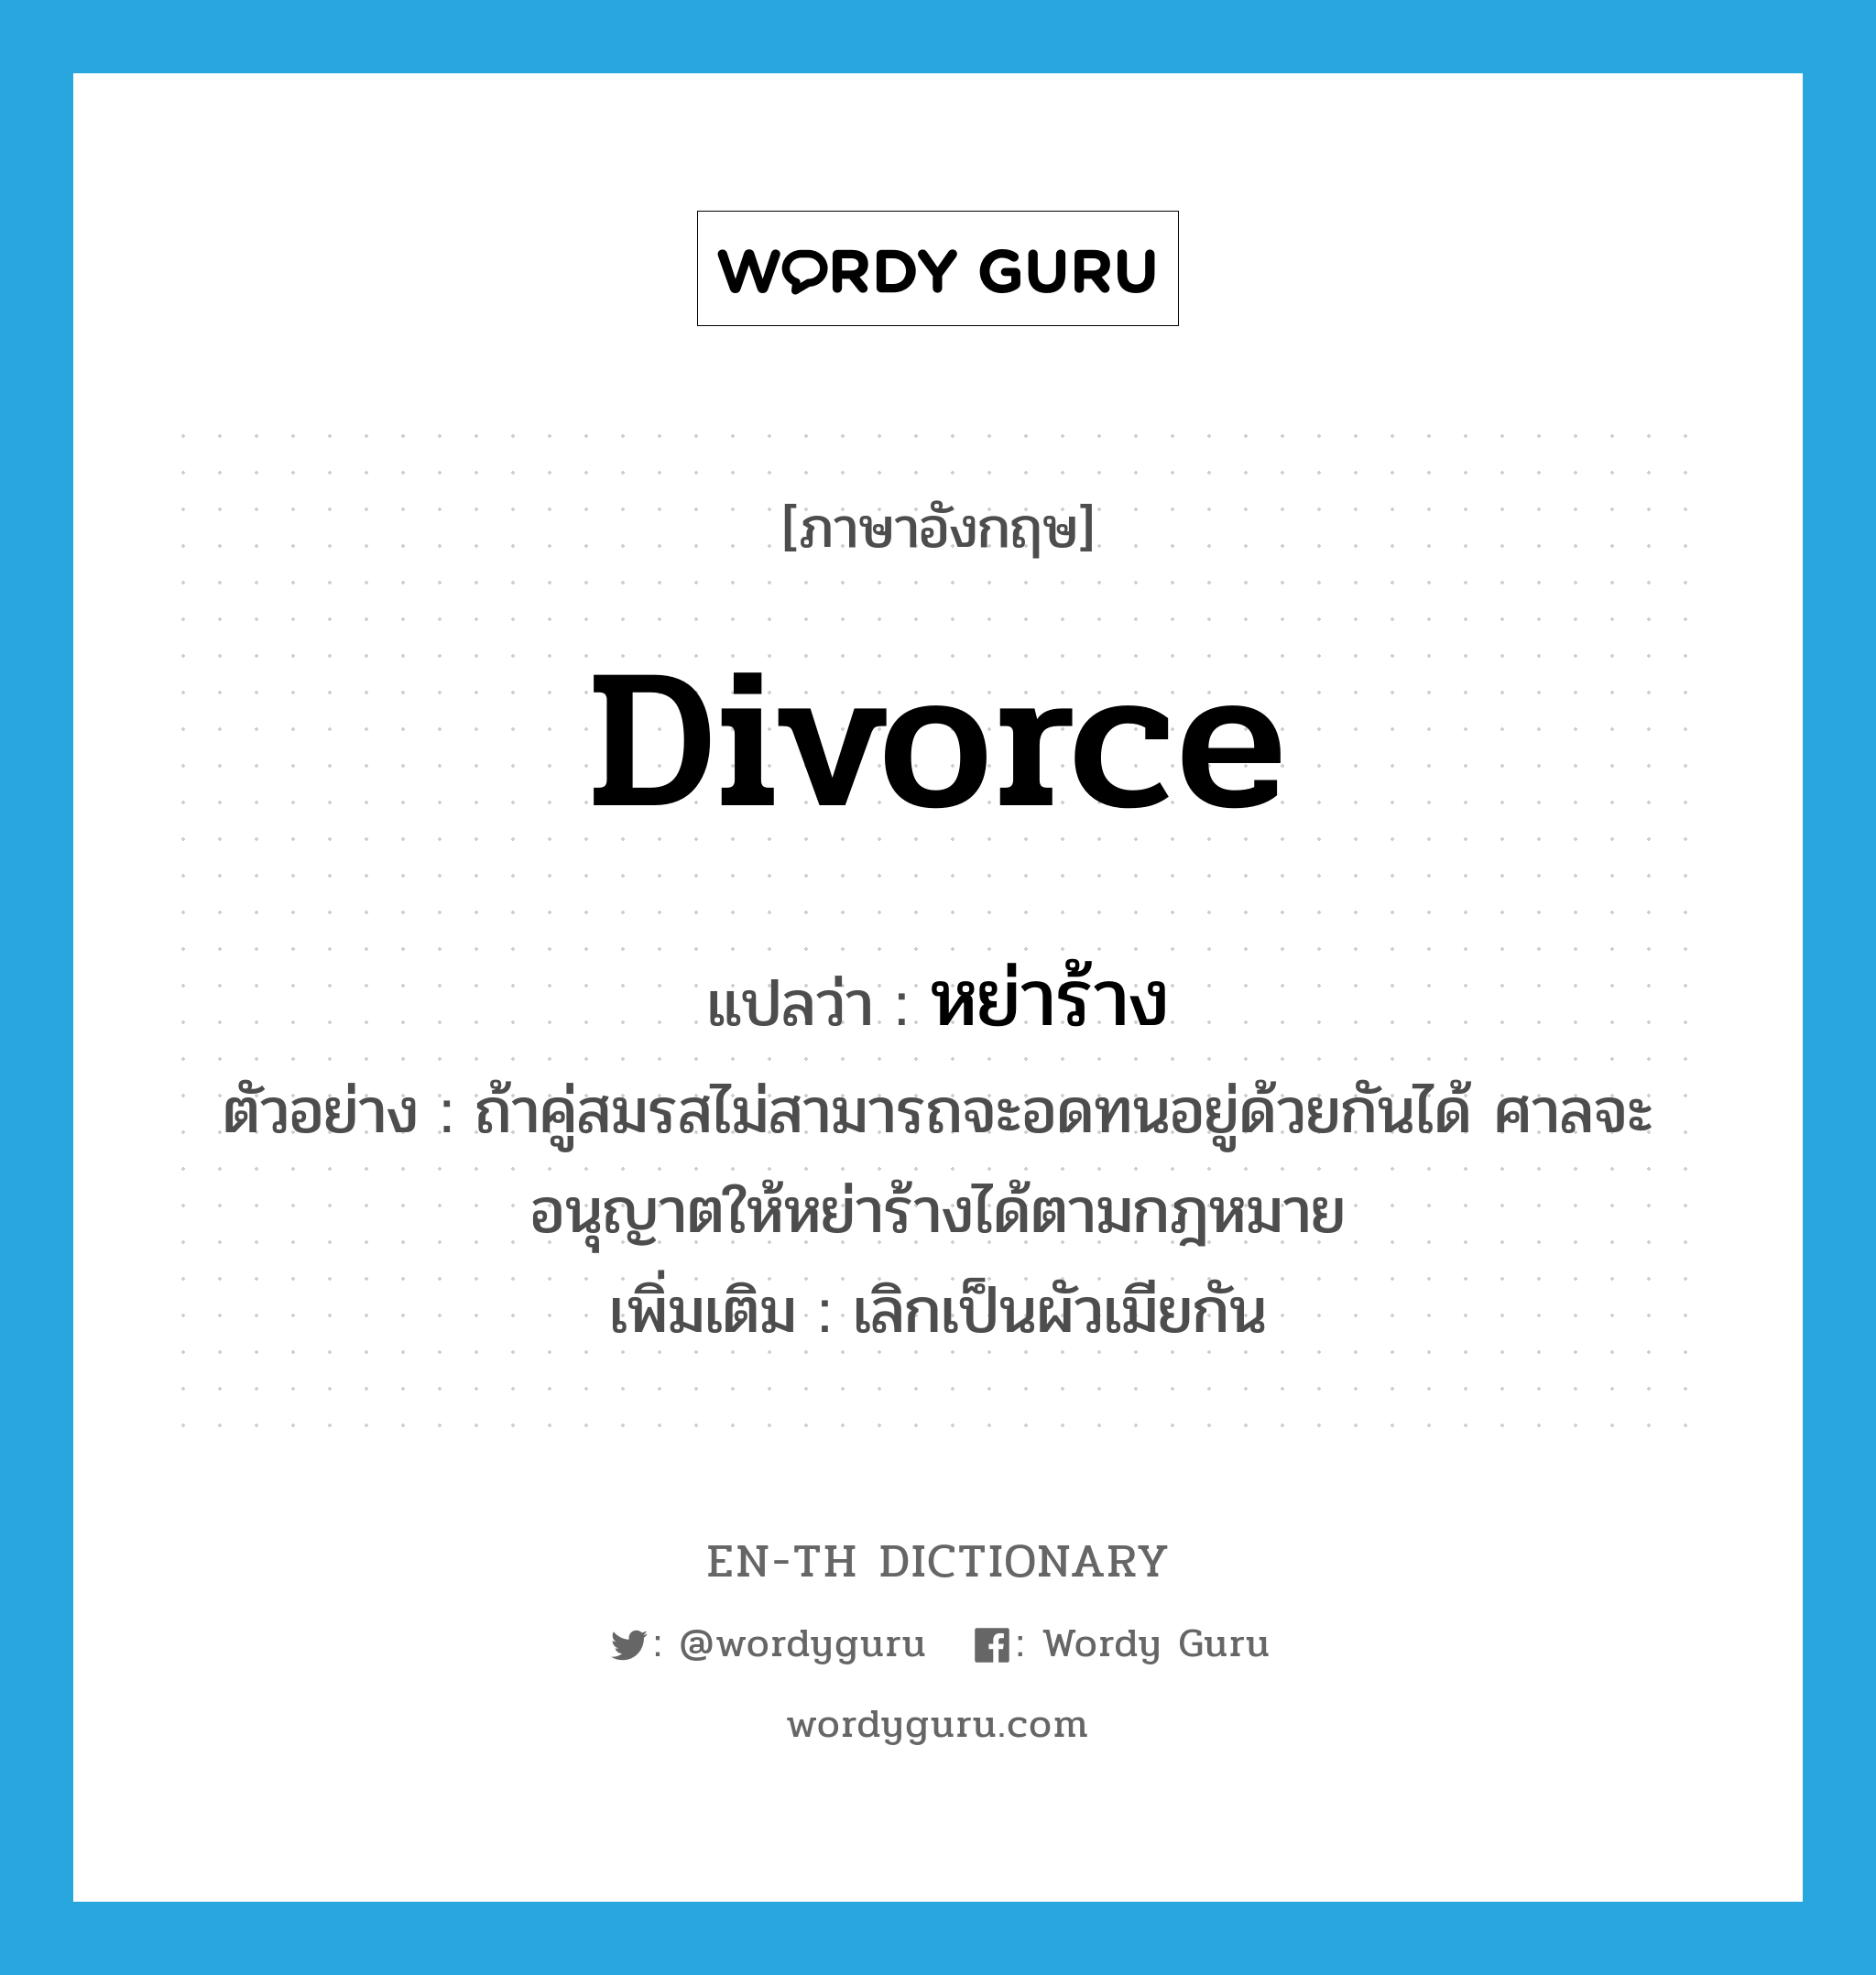 หย่าร้าง ภาษาอังกฤษ?, คำศัพท์ภาษาอังกฤษ หย่าร้าง แปลว่า divorce ประเภท V ตัวอย่าง ถ้าคู่สมรสไม่สามารถจะอดทนอยู่ด้วยกันได้ ศาลจะอนุญาตให้หย่าร้างได้ตามกฎหมาย เพิ่มเติม เลิกเป็นผัวเมียกัน หมวด V